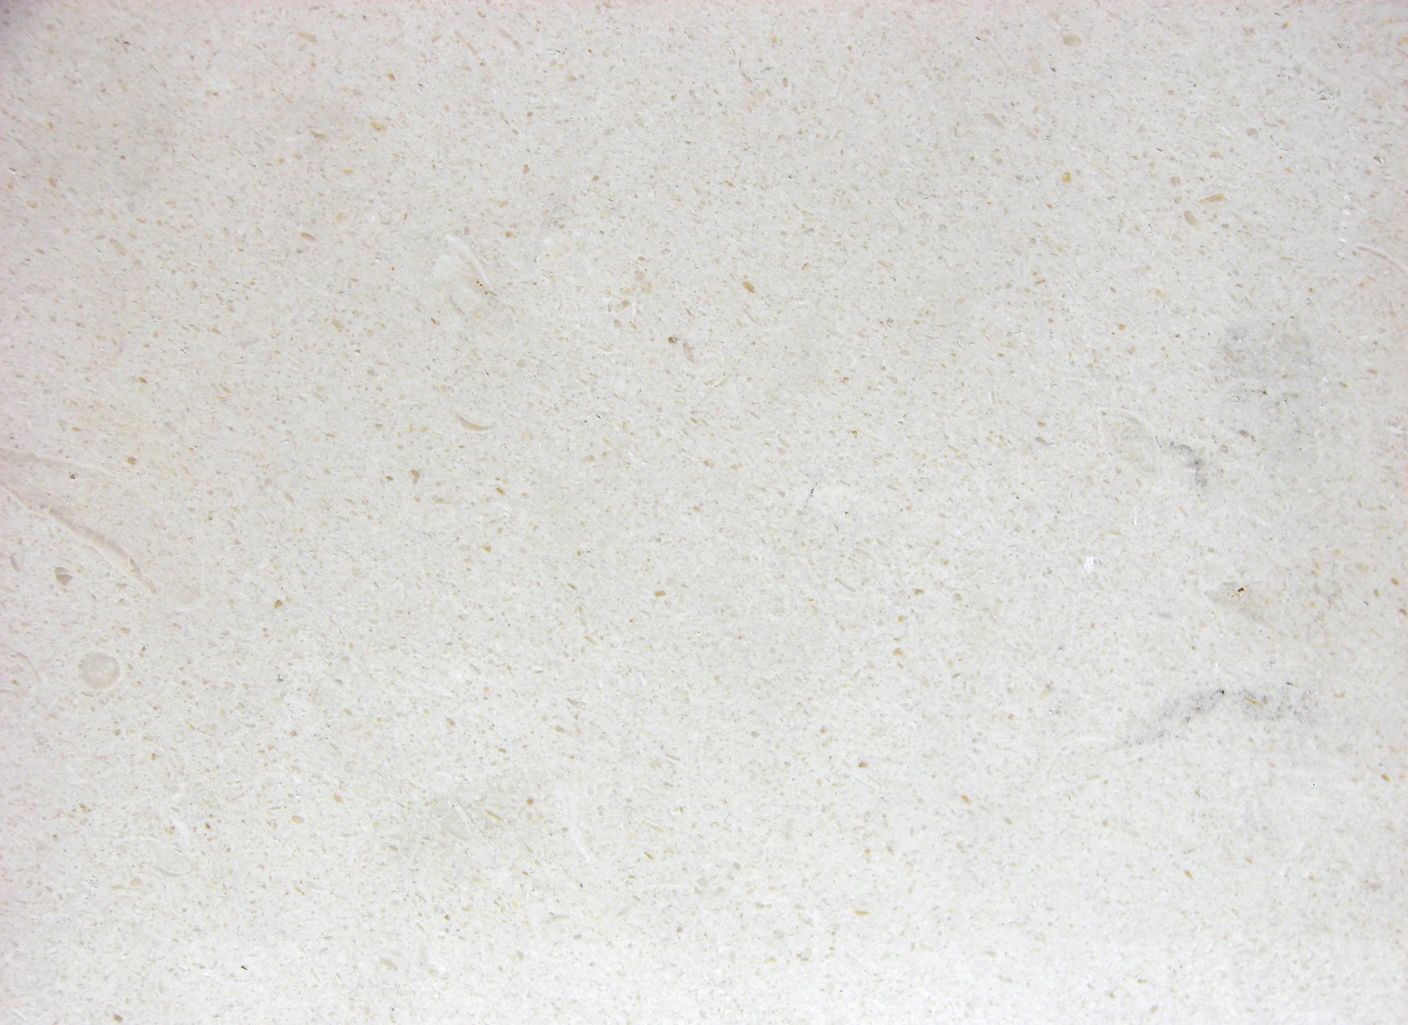 Un primer plano de una superficie blanca con una textura granulada.